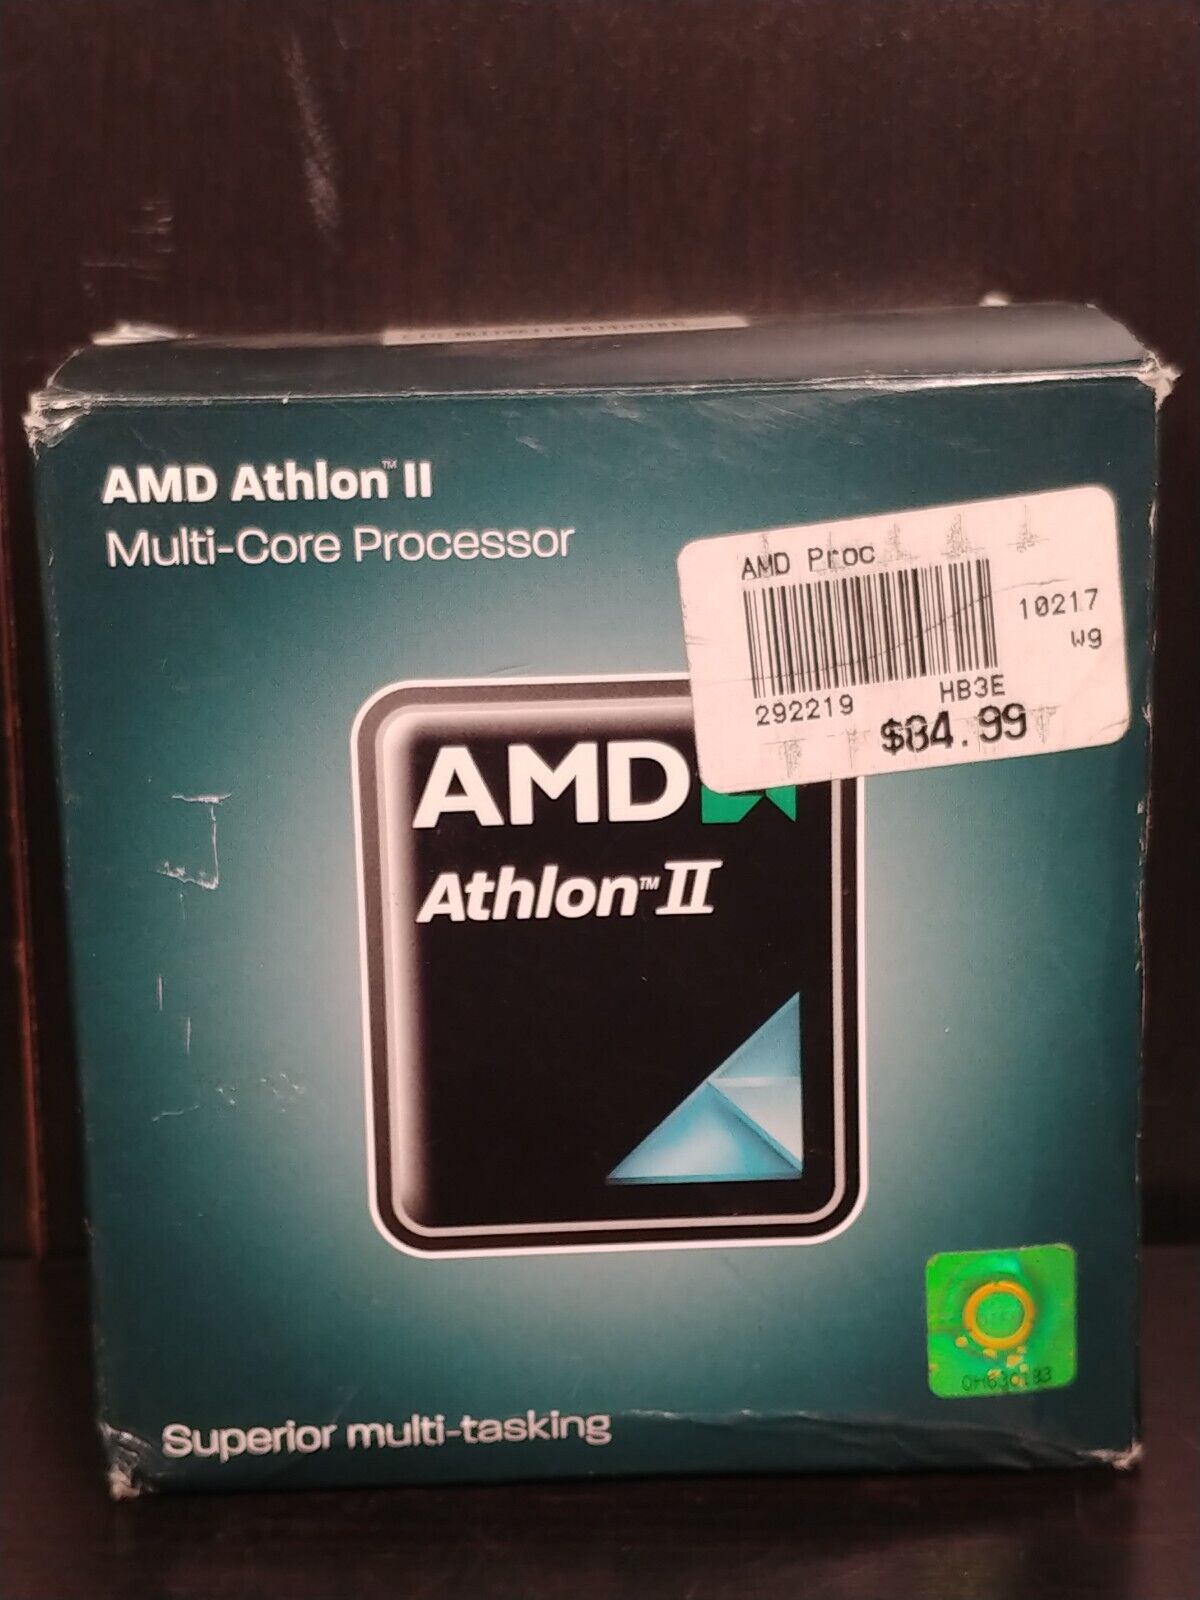 AMD Athlon 2 X250 Multi-Core-Processor With Heat Sink Fan, Open Box Unused.